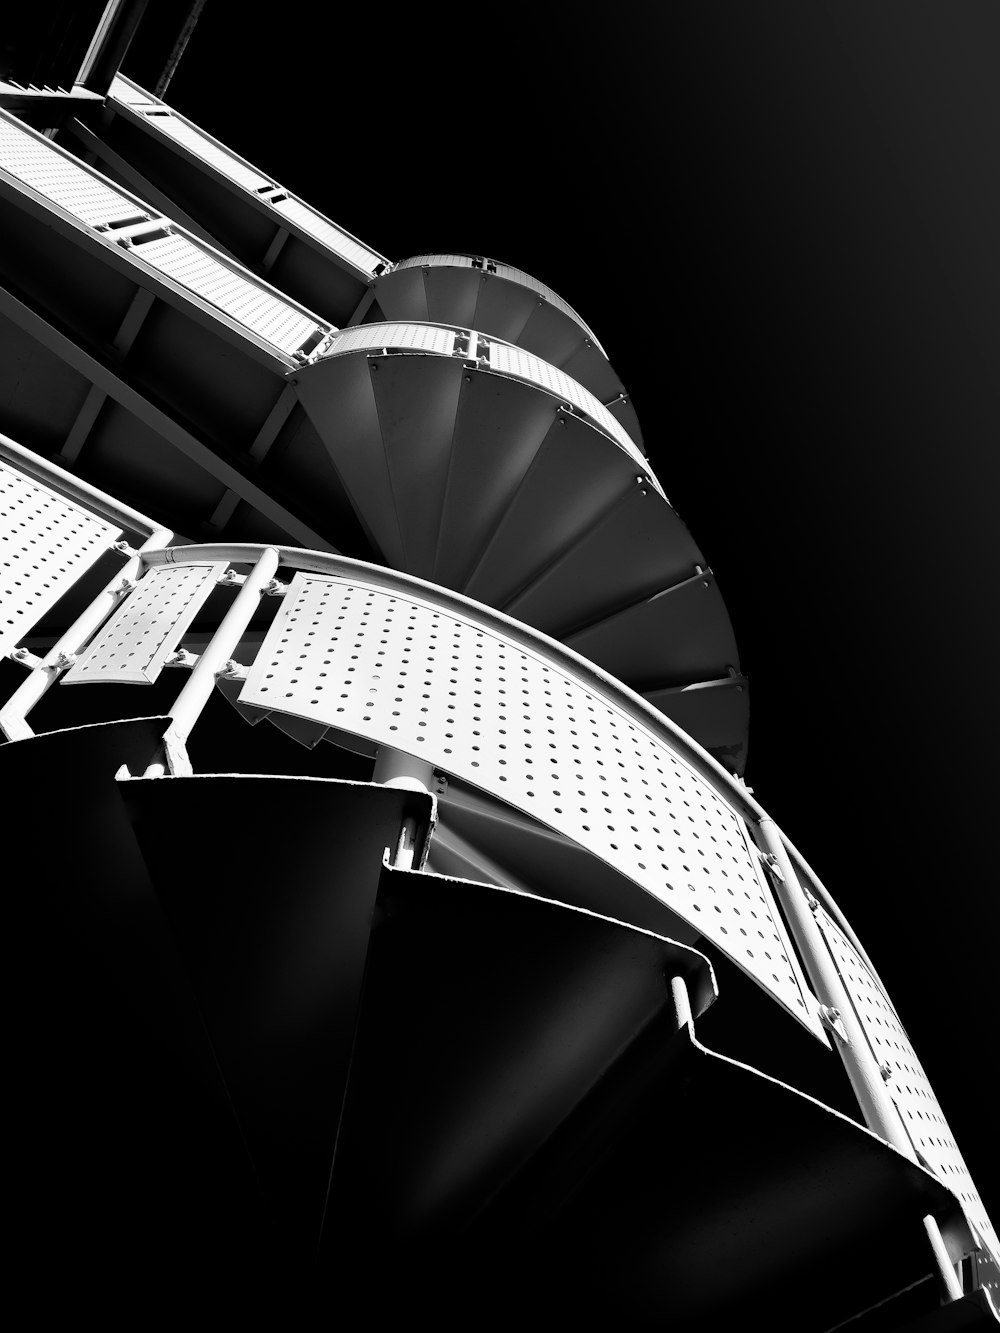 Una foto en blanco y negro de una escalera de caracol